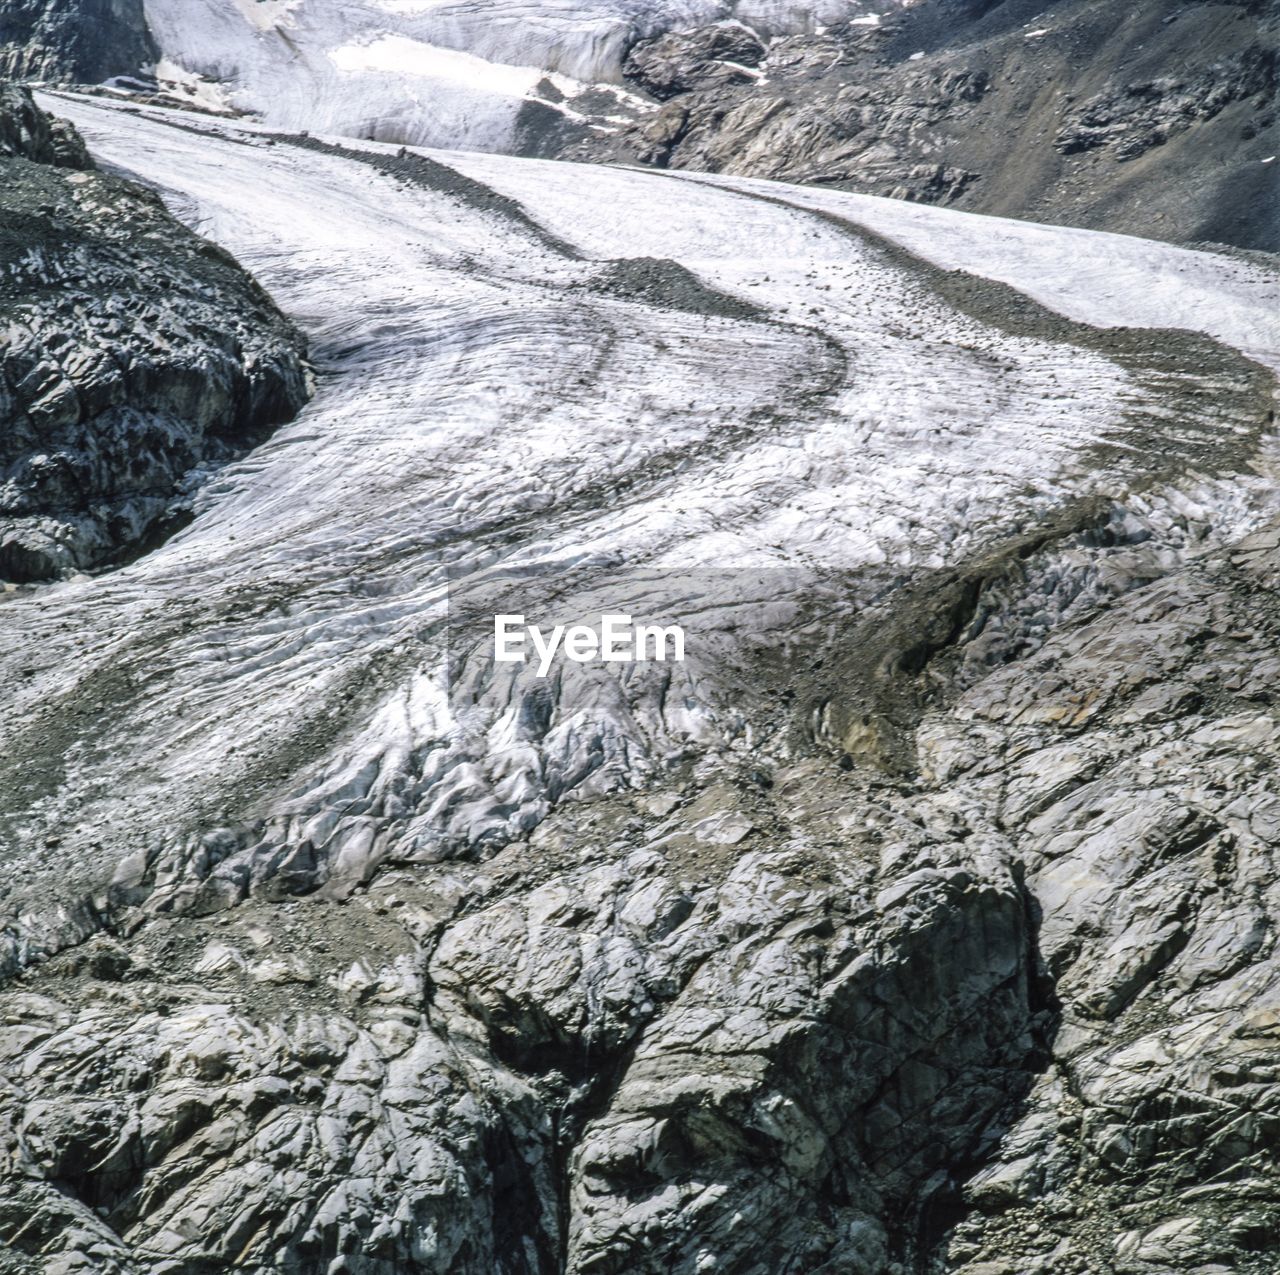 Bernina glacier